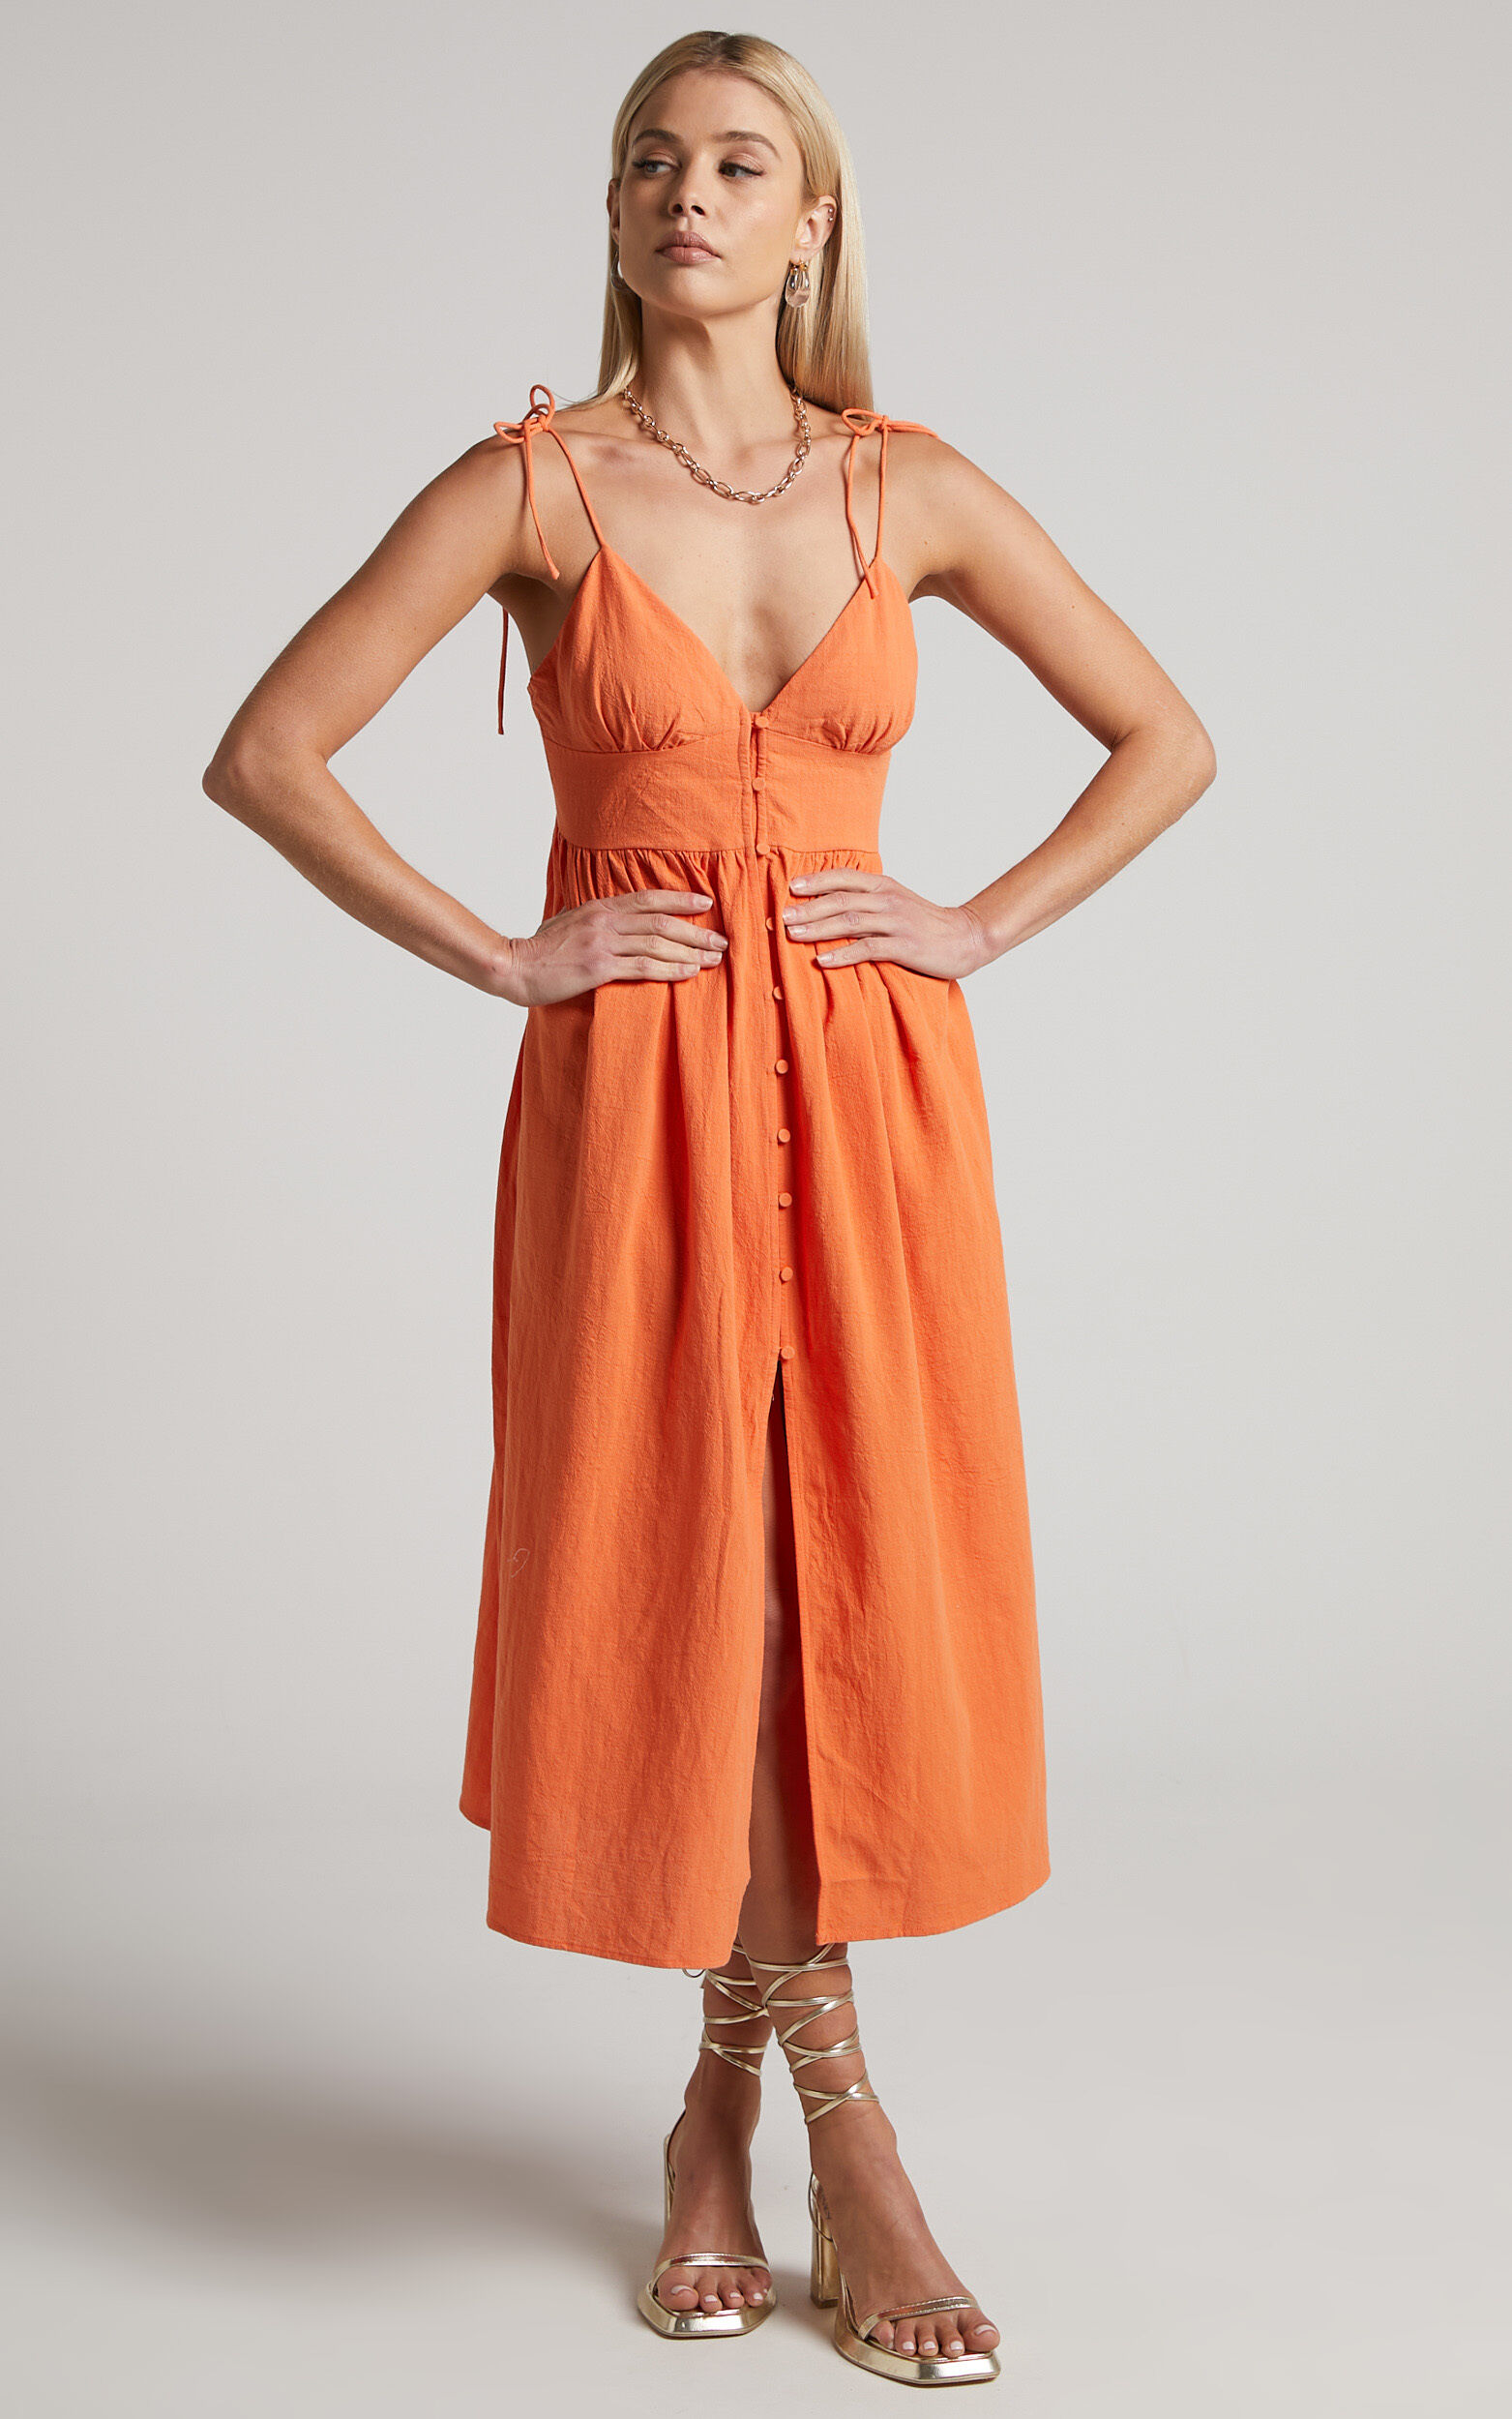 Chalmer Midi Dress - Tie Shoulder V Neck Button Up Dress in Orange - 04, ORG1, super-hi-res image number null